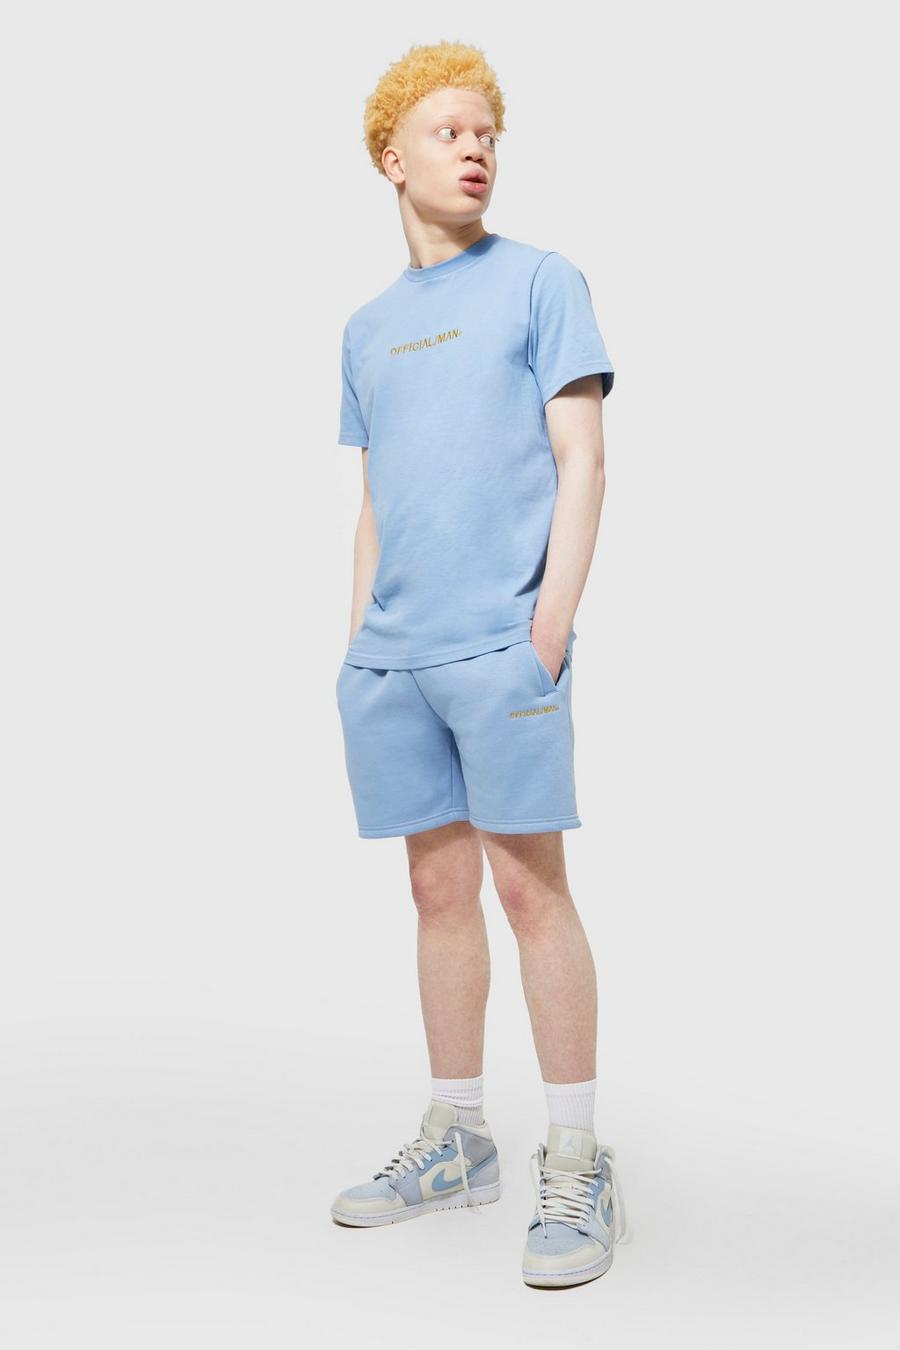 Light blue Slim Fit Official Man T-shirt And Short Set image number 1